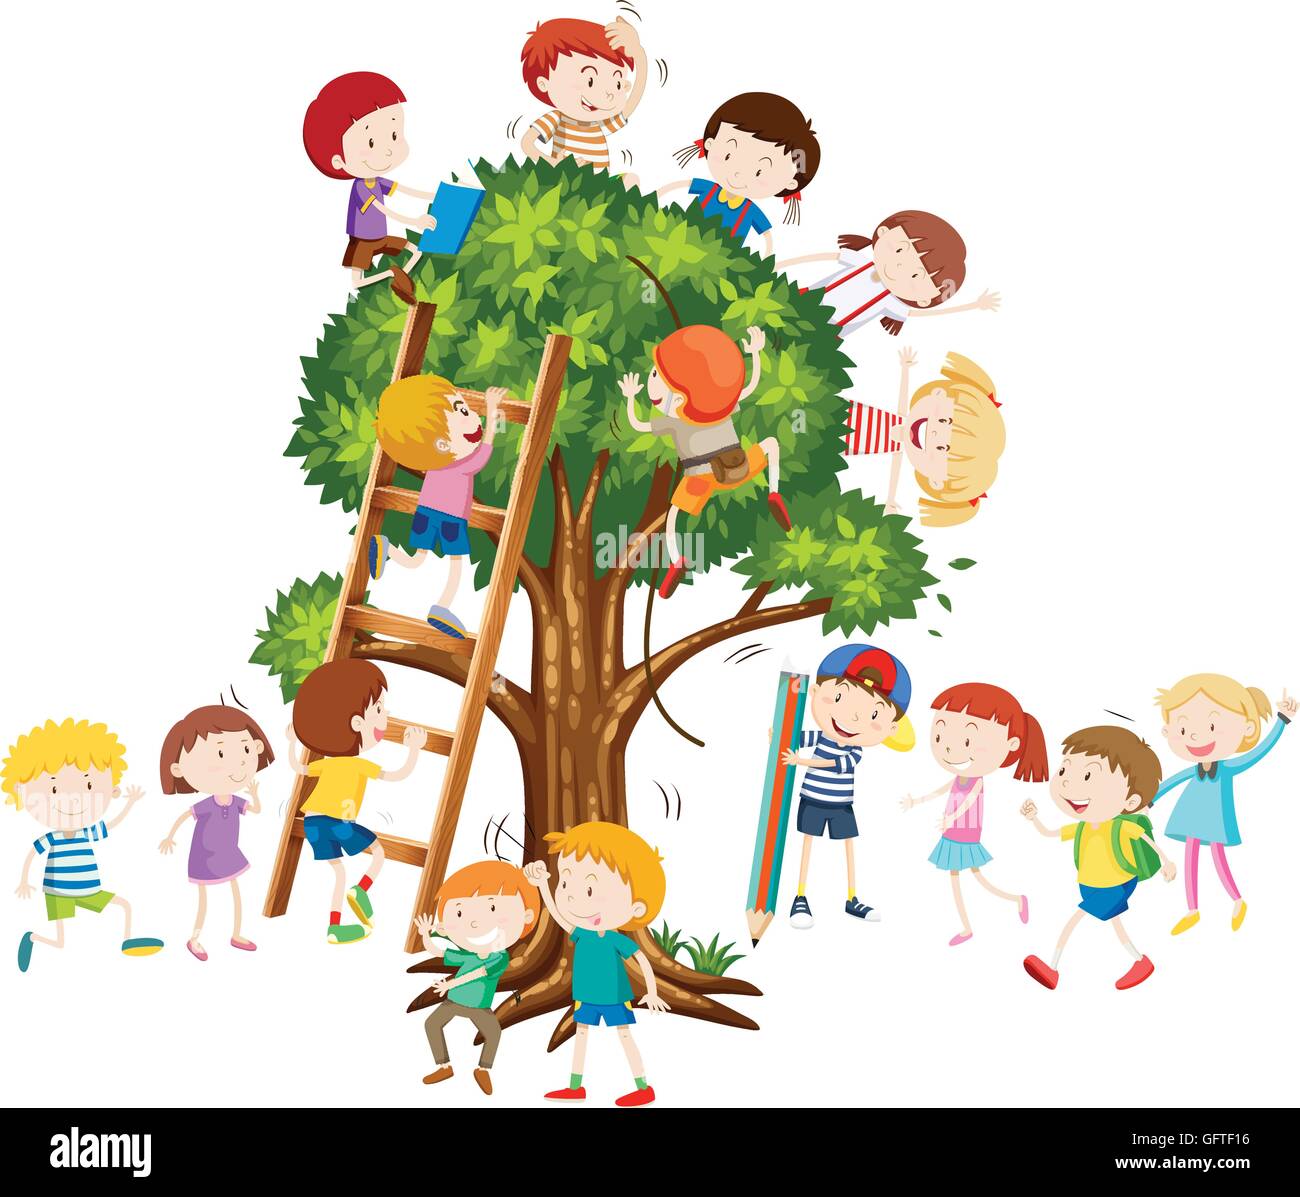 Kinder Klettern Auf Den Baum Darstellung Stock Vektorgrafik Alamy 